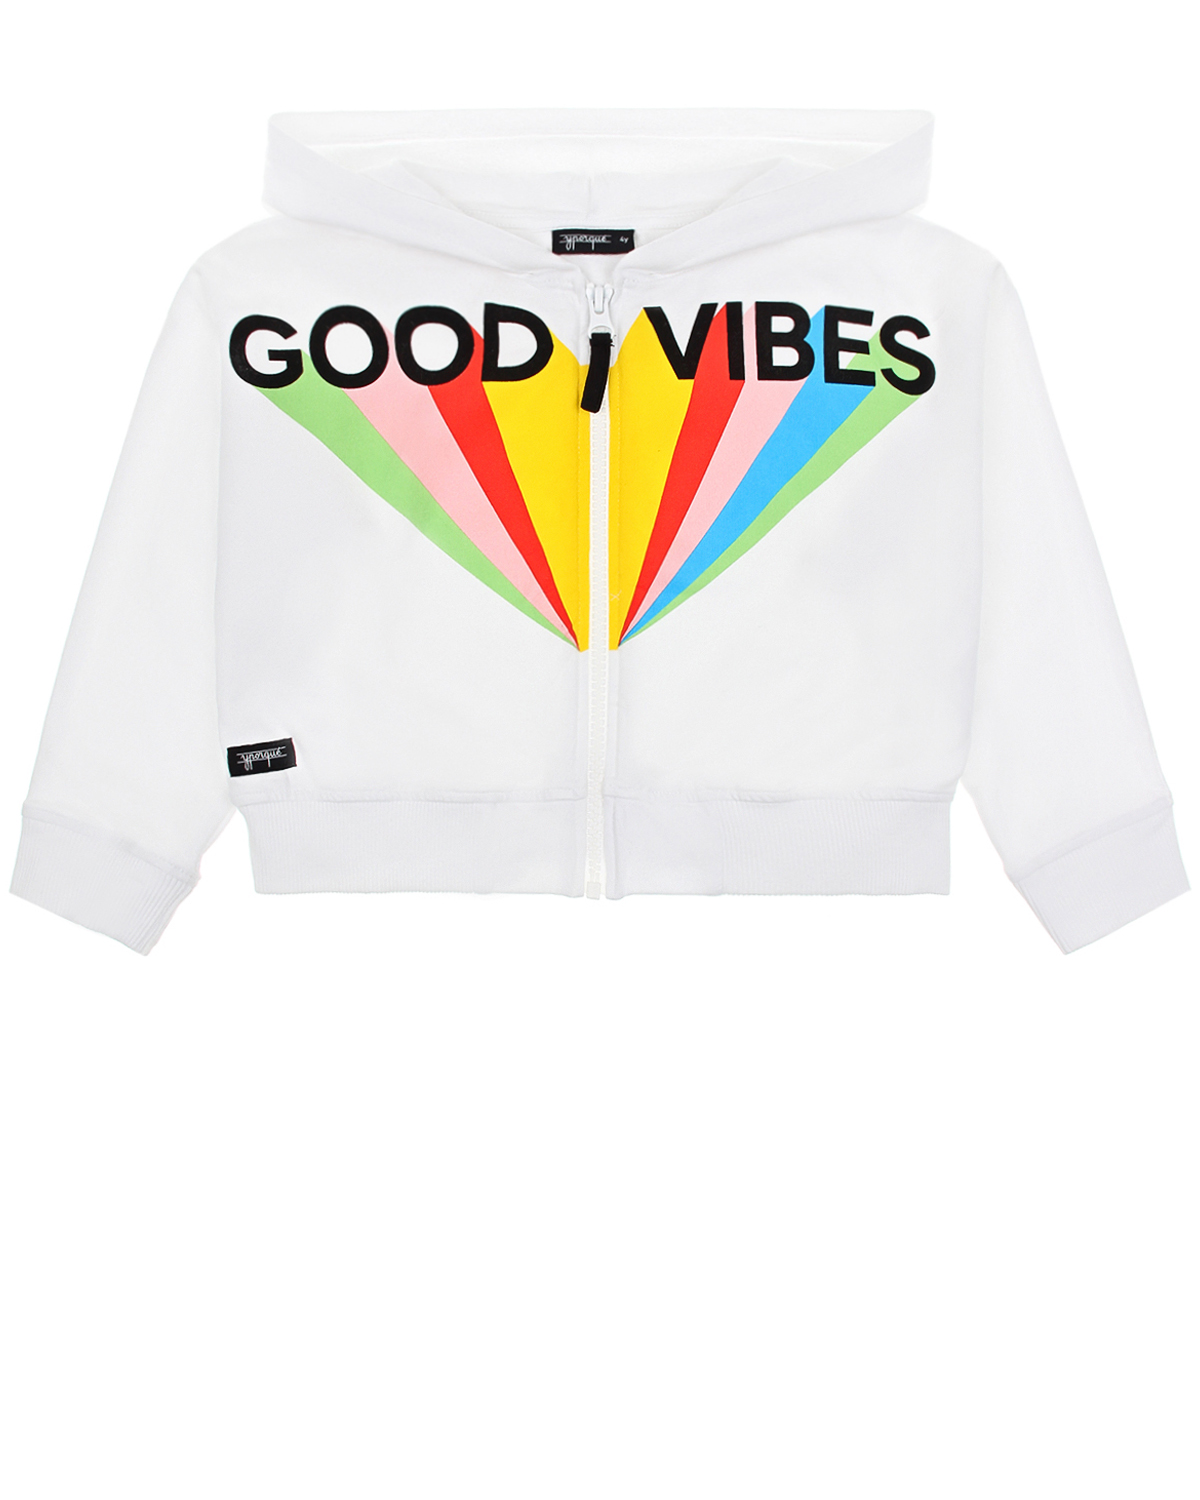 Куртка спортивная с надписью "Good vibes" Yporque детская, размер 92, цвет белый - фото 1